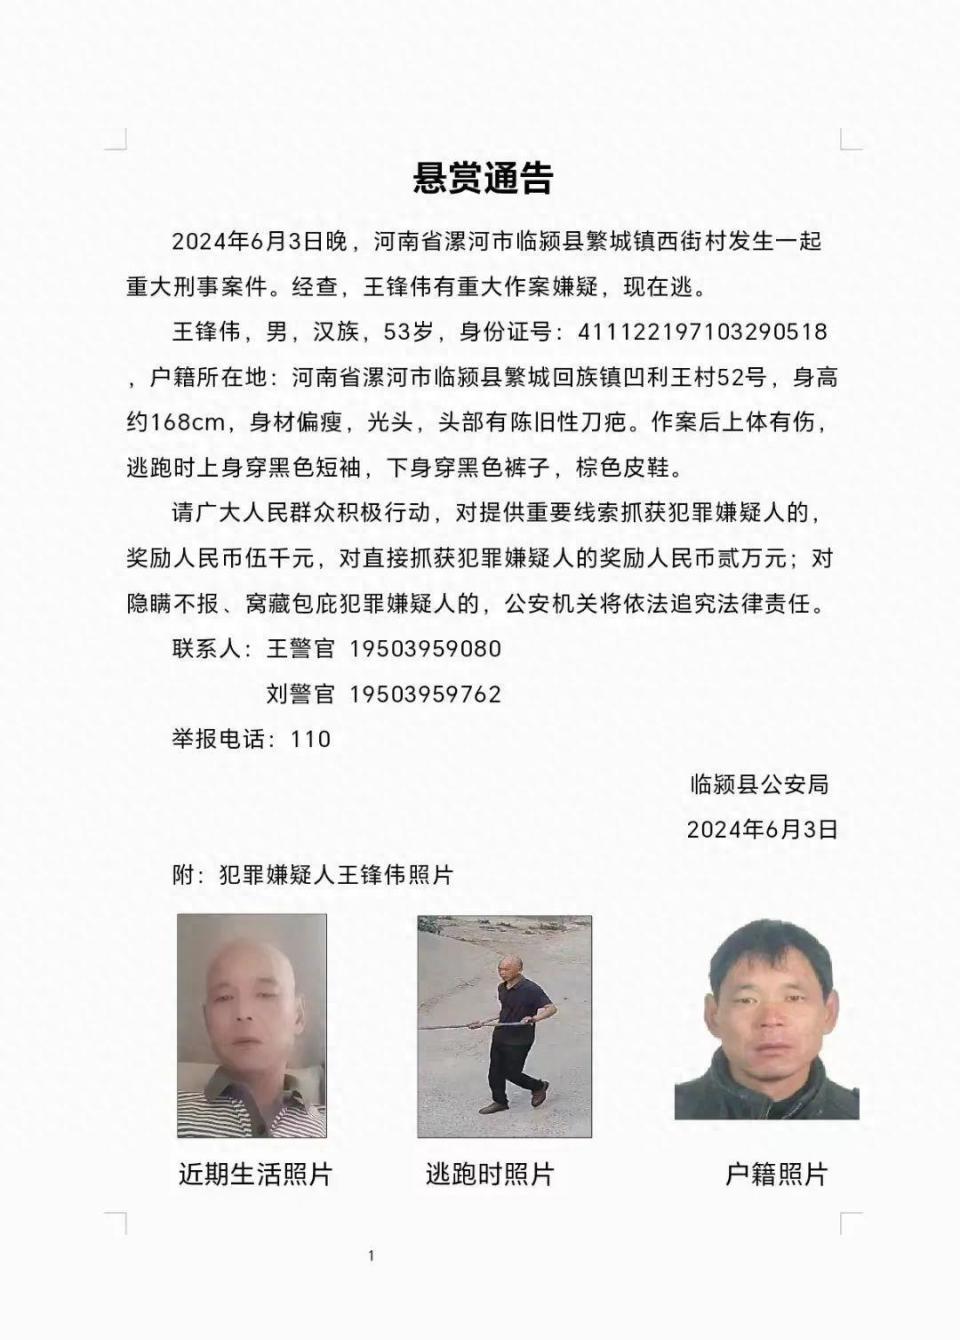 河南临颍发生一起刑事案件,53岁犯罪嫌疑人在逃,其作案后上体有伤